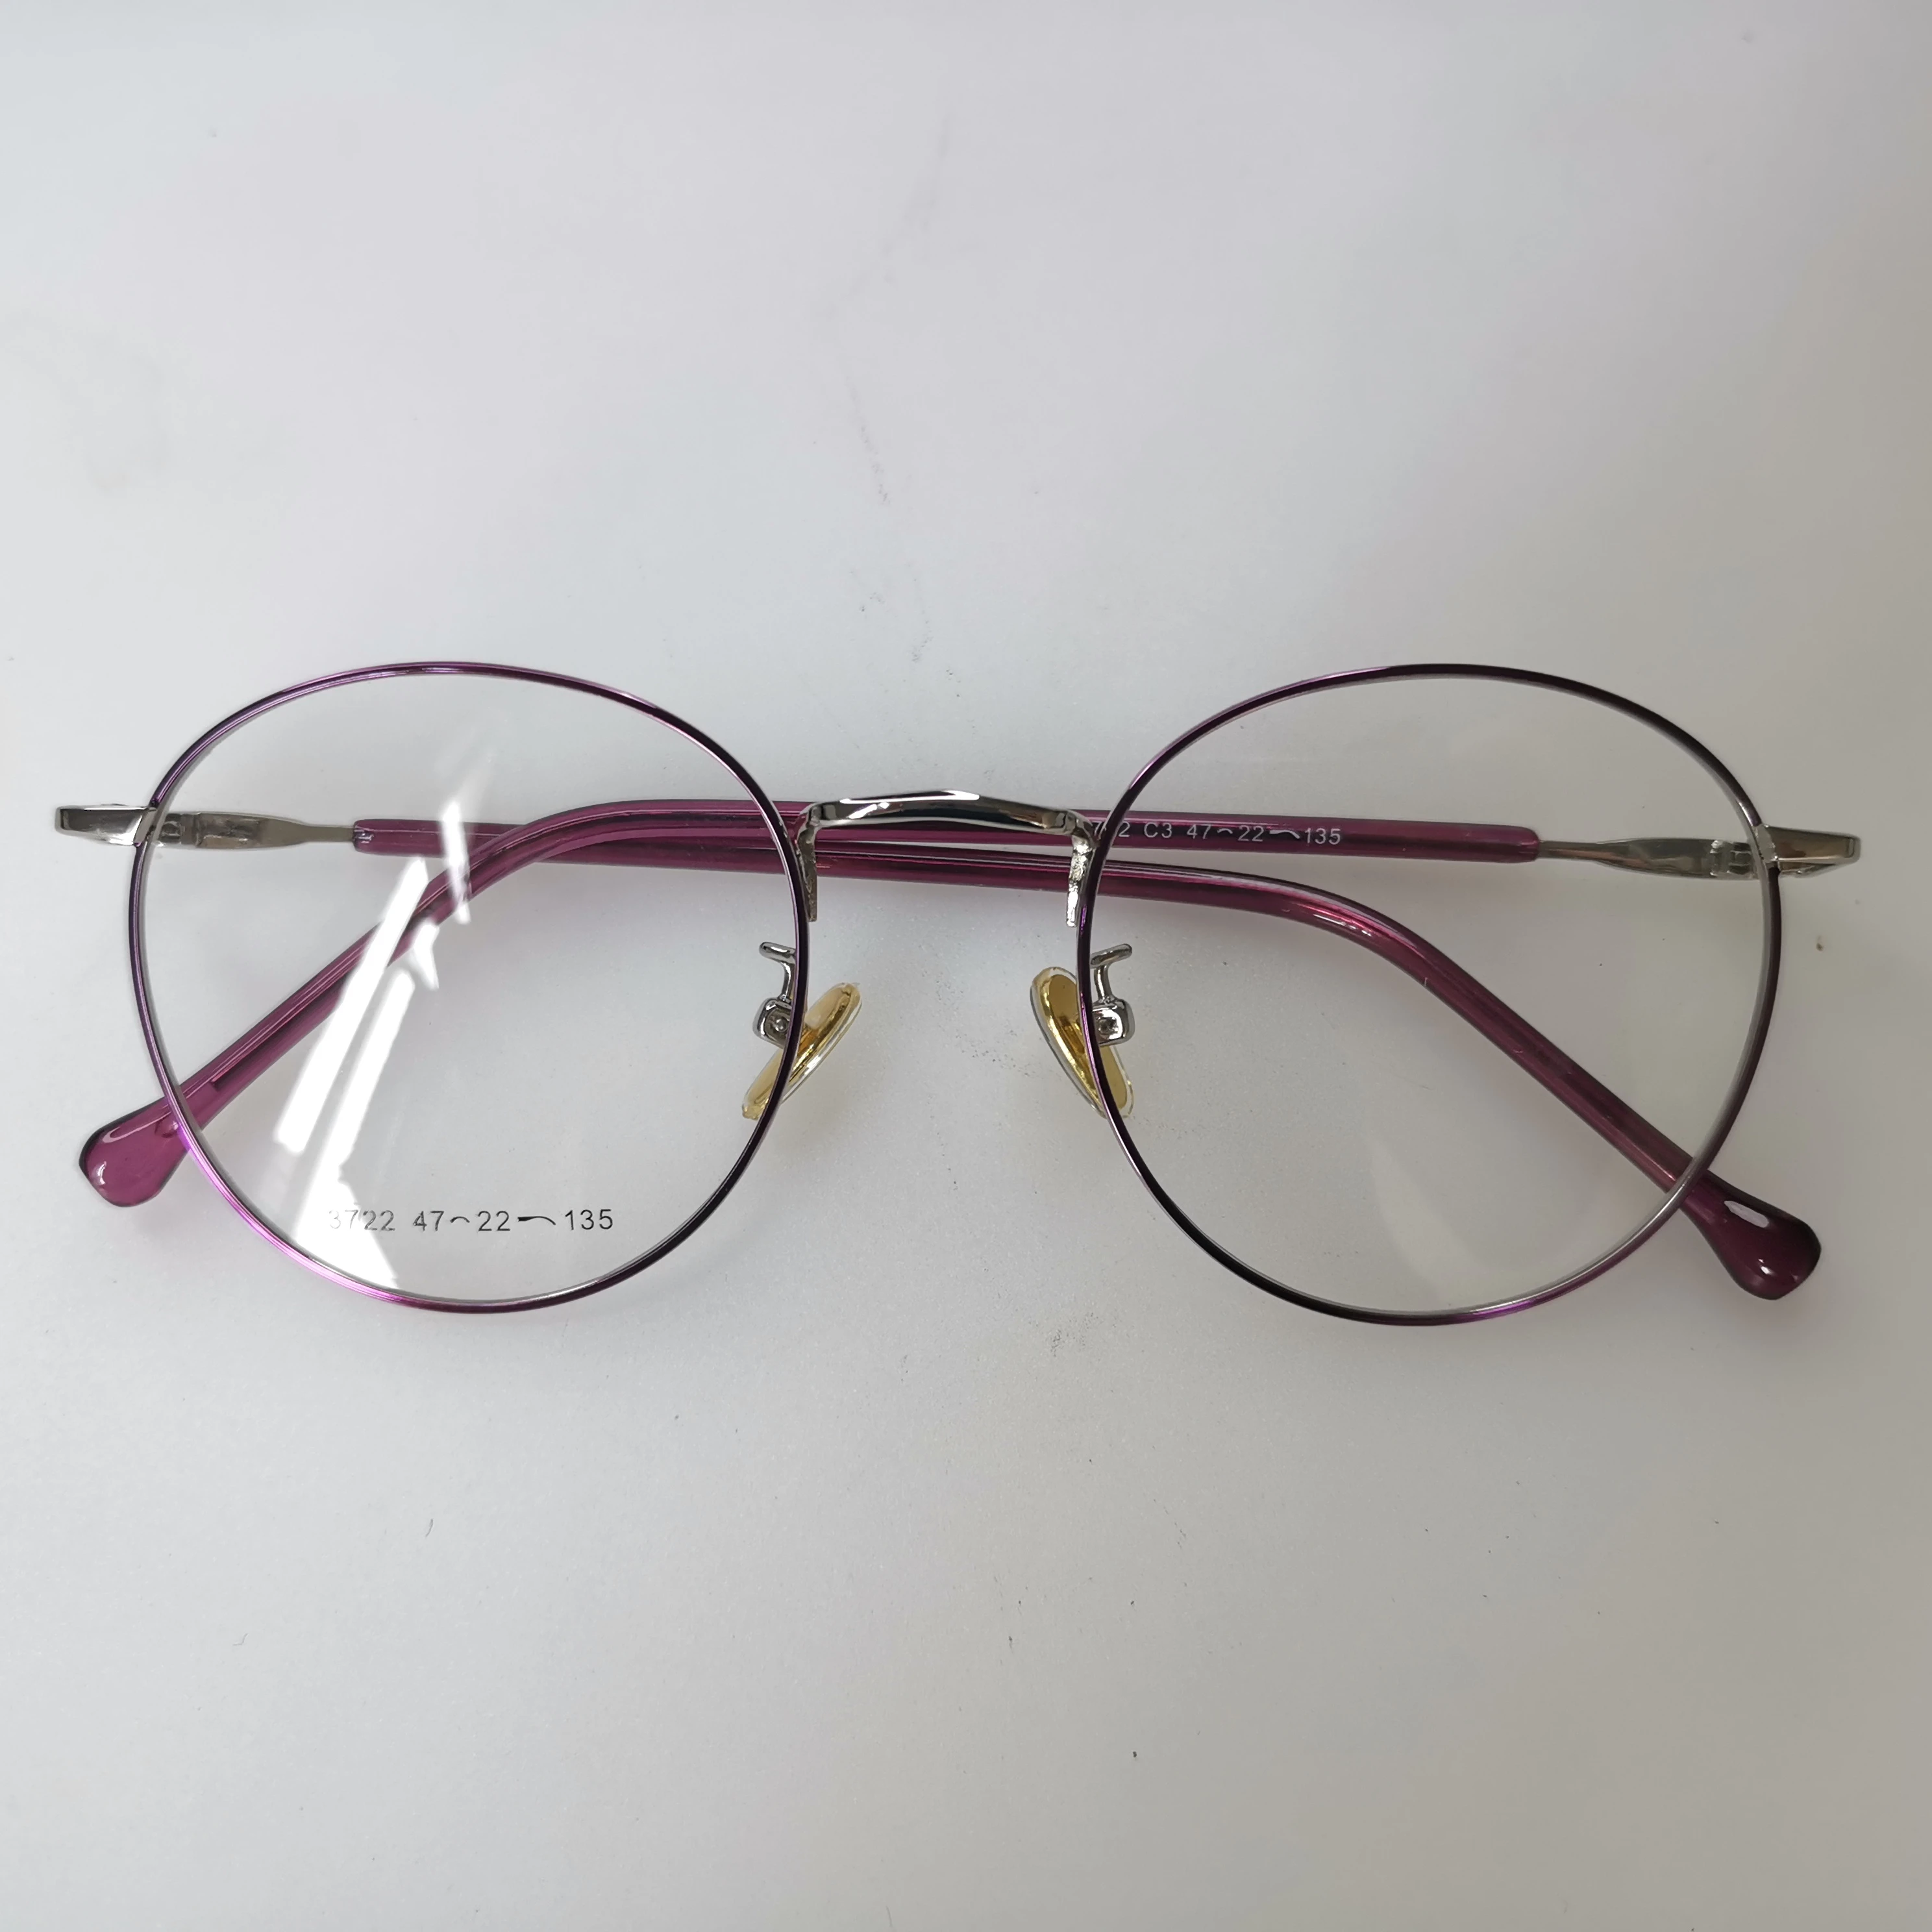 超轻女性眼镜框记忆钛眼镜镜框光学眼镜 Buy B钛 近视眼镜 金属玻璃product On Alibaba Com